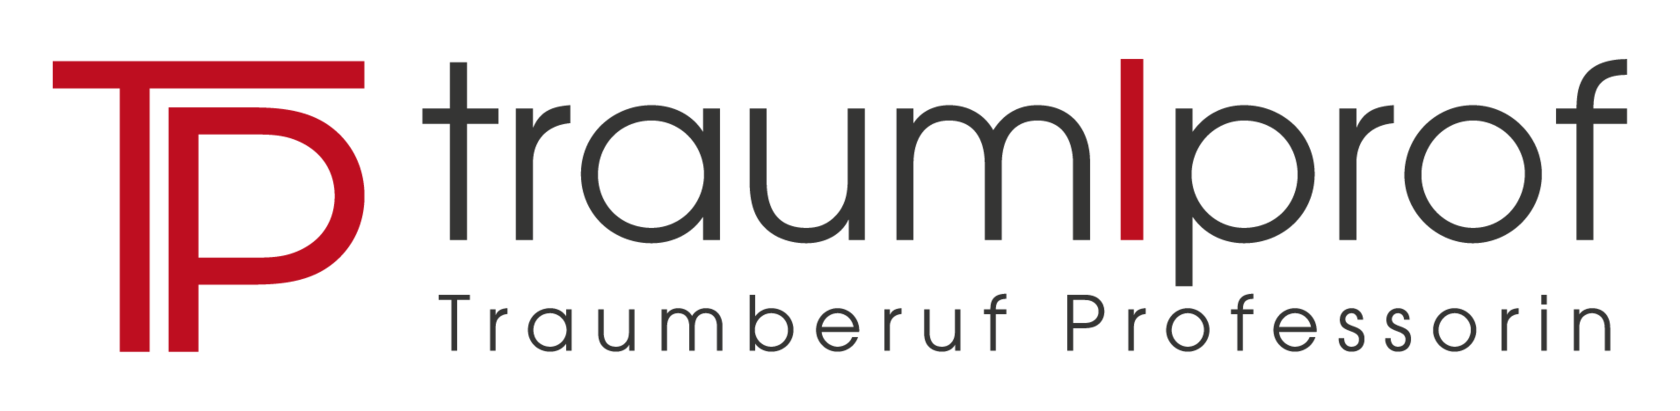 Logo TraumProf+